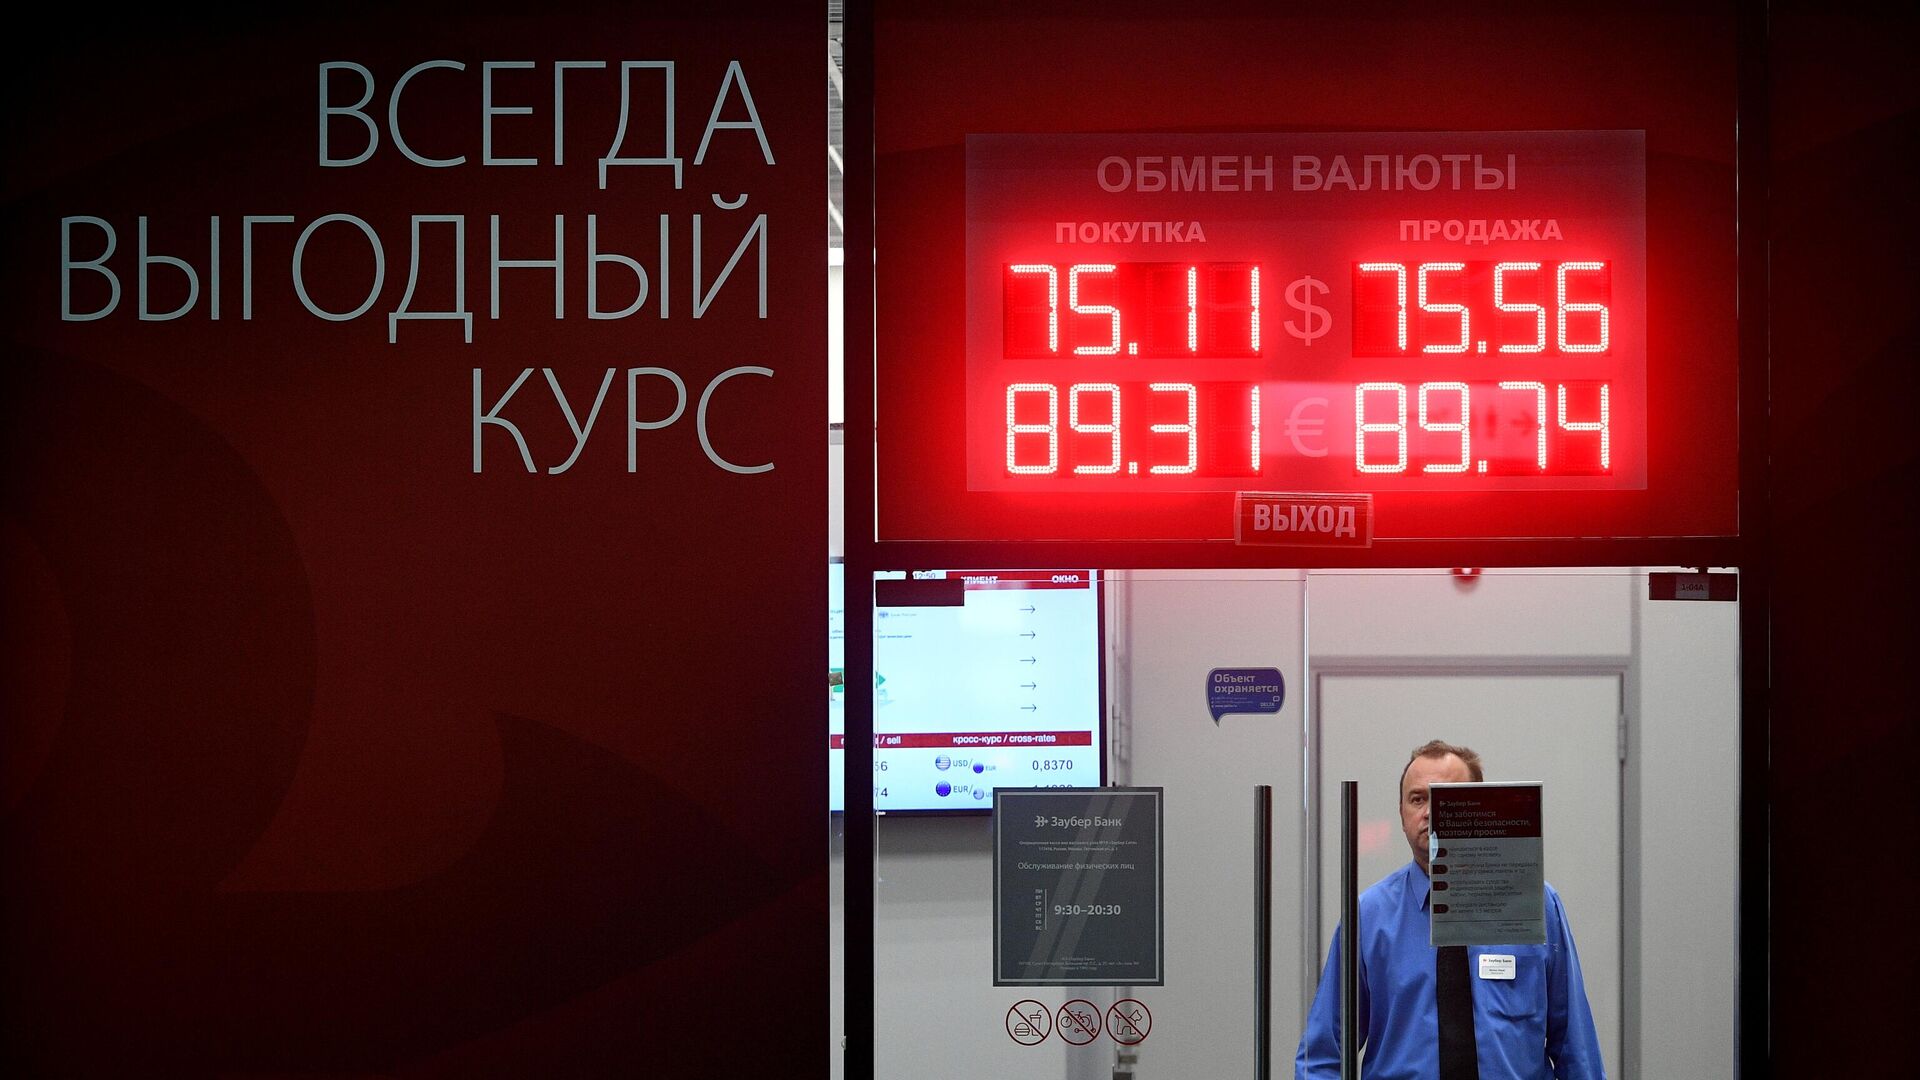 Выгодный курс евро обмена валюты в москве bitcoin file download